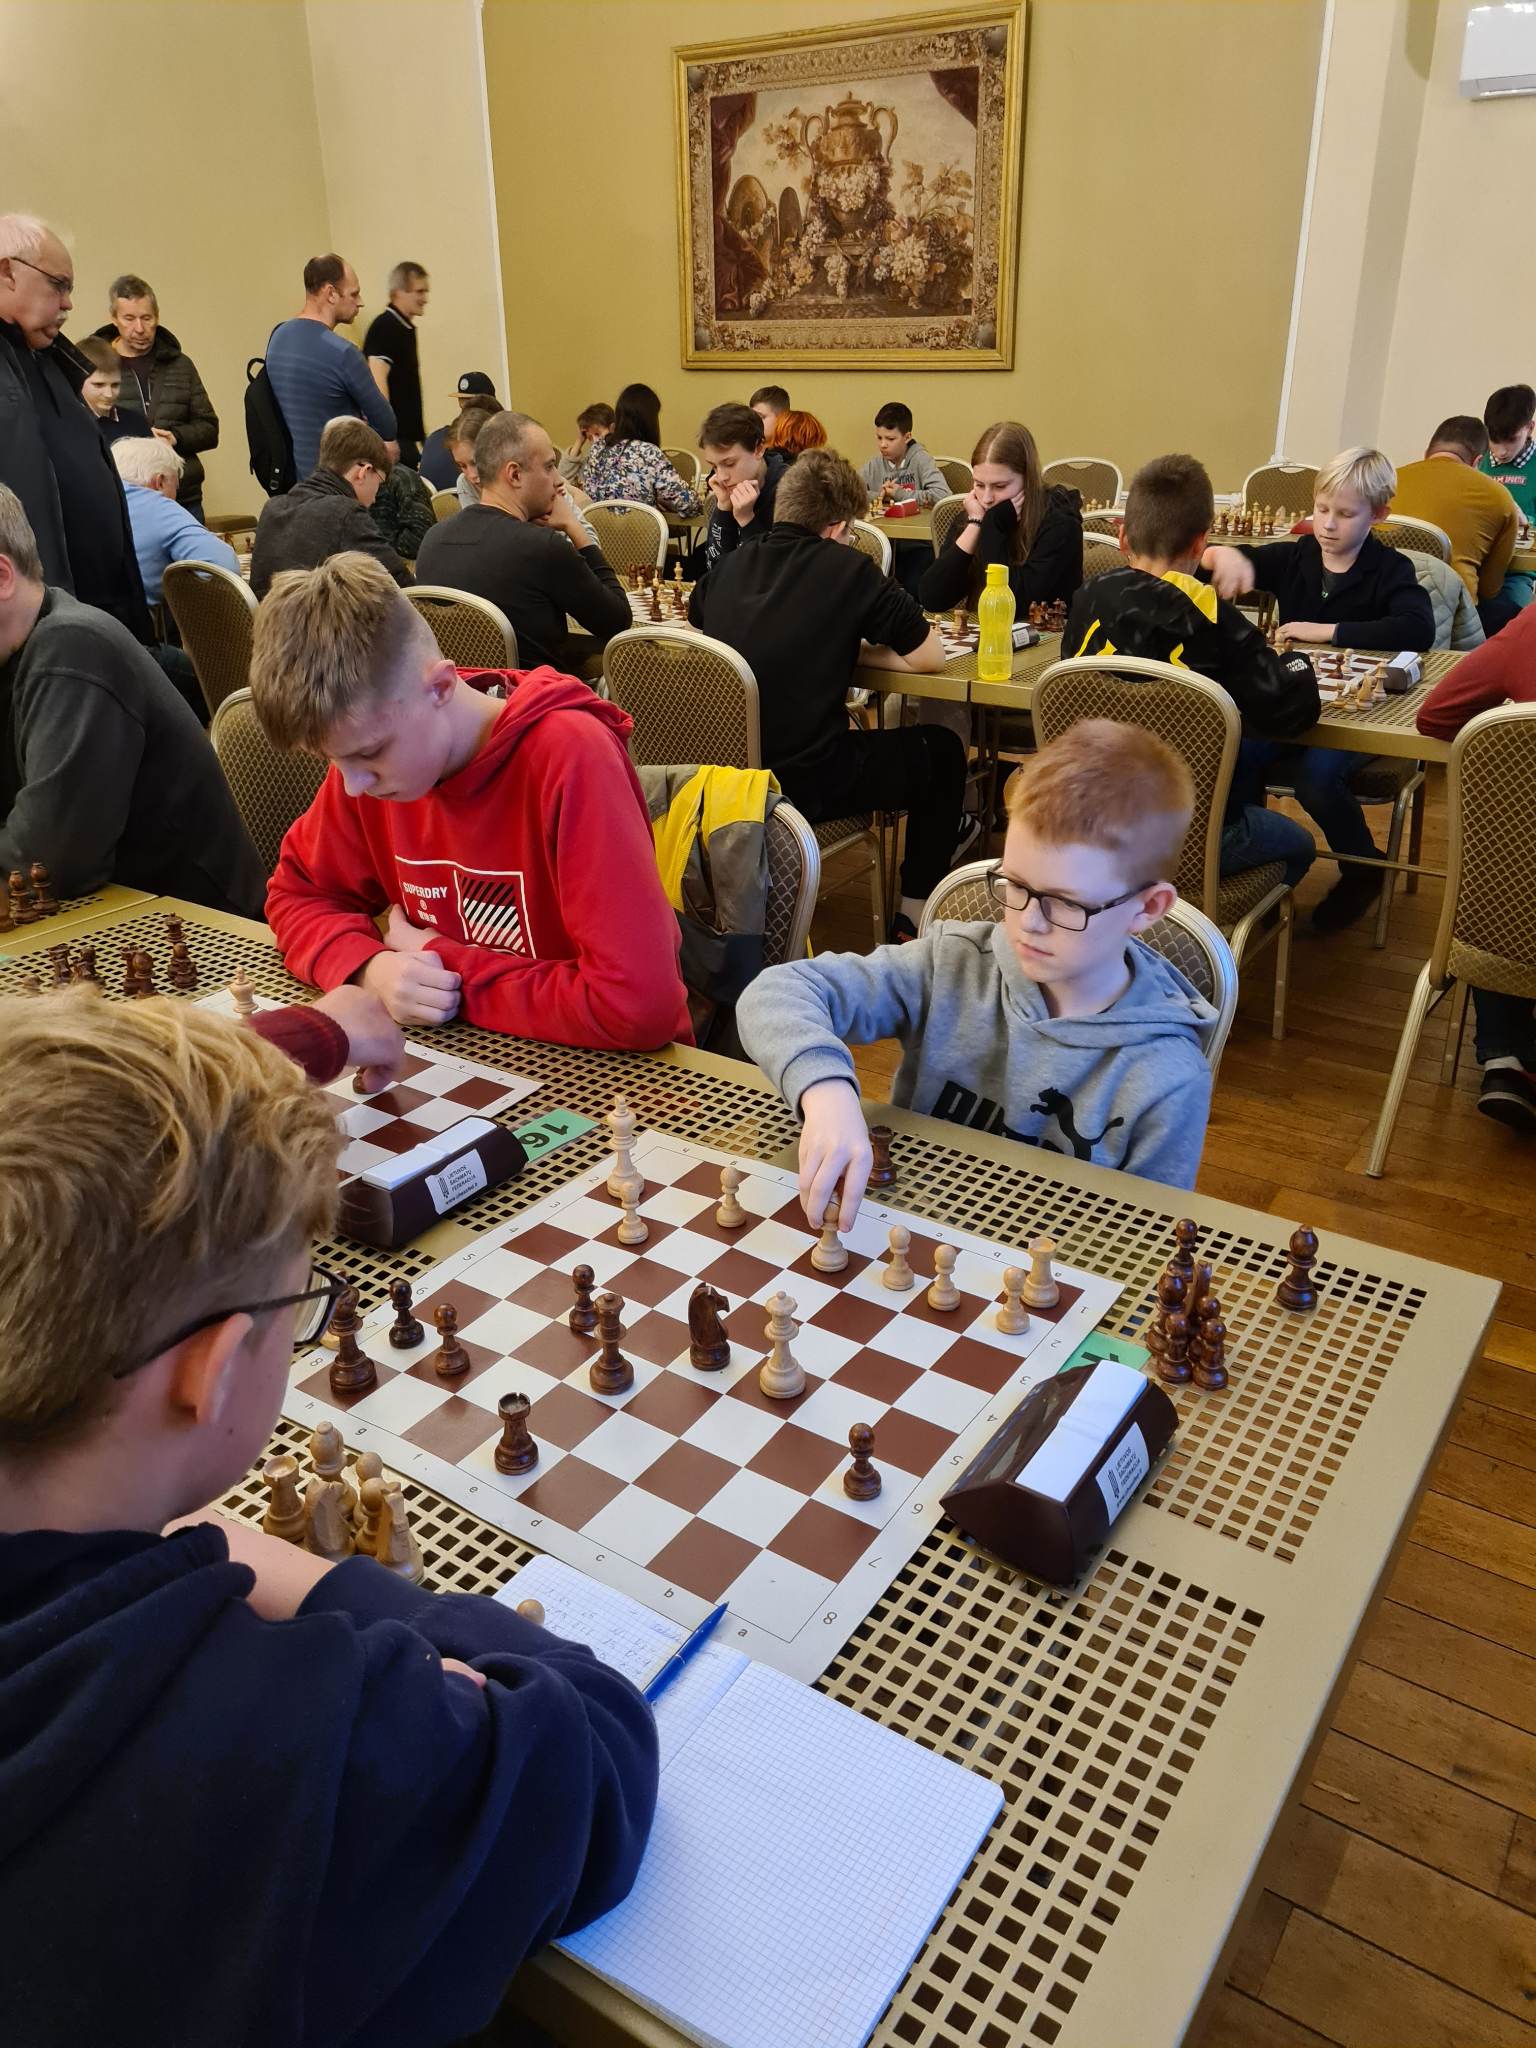 Broliai Norkeliūnai skina pergales prie šachmatų lentos